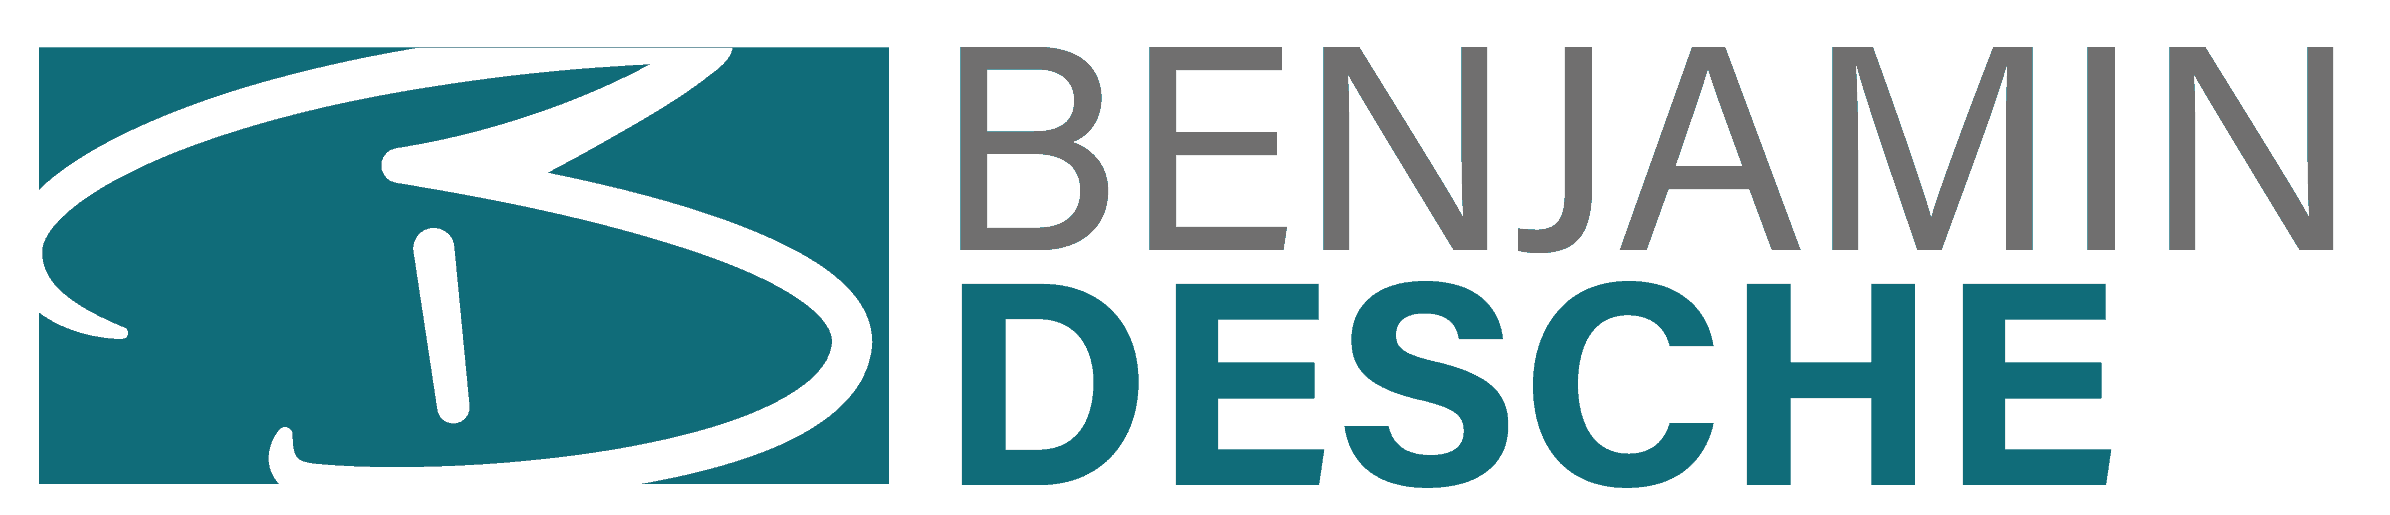 Logo Benjamin Desche